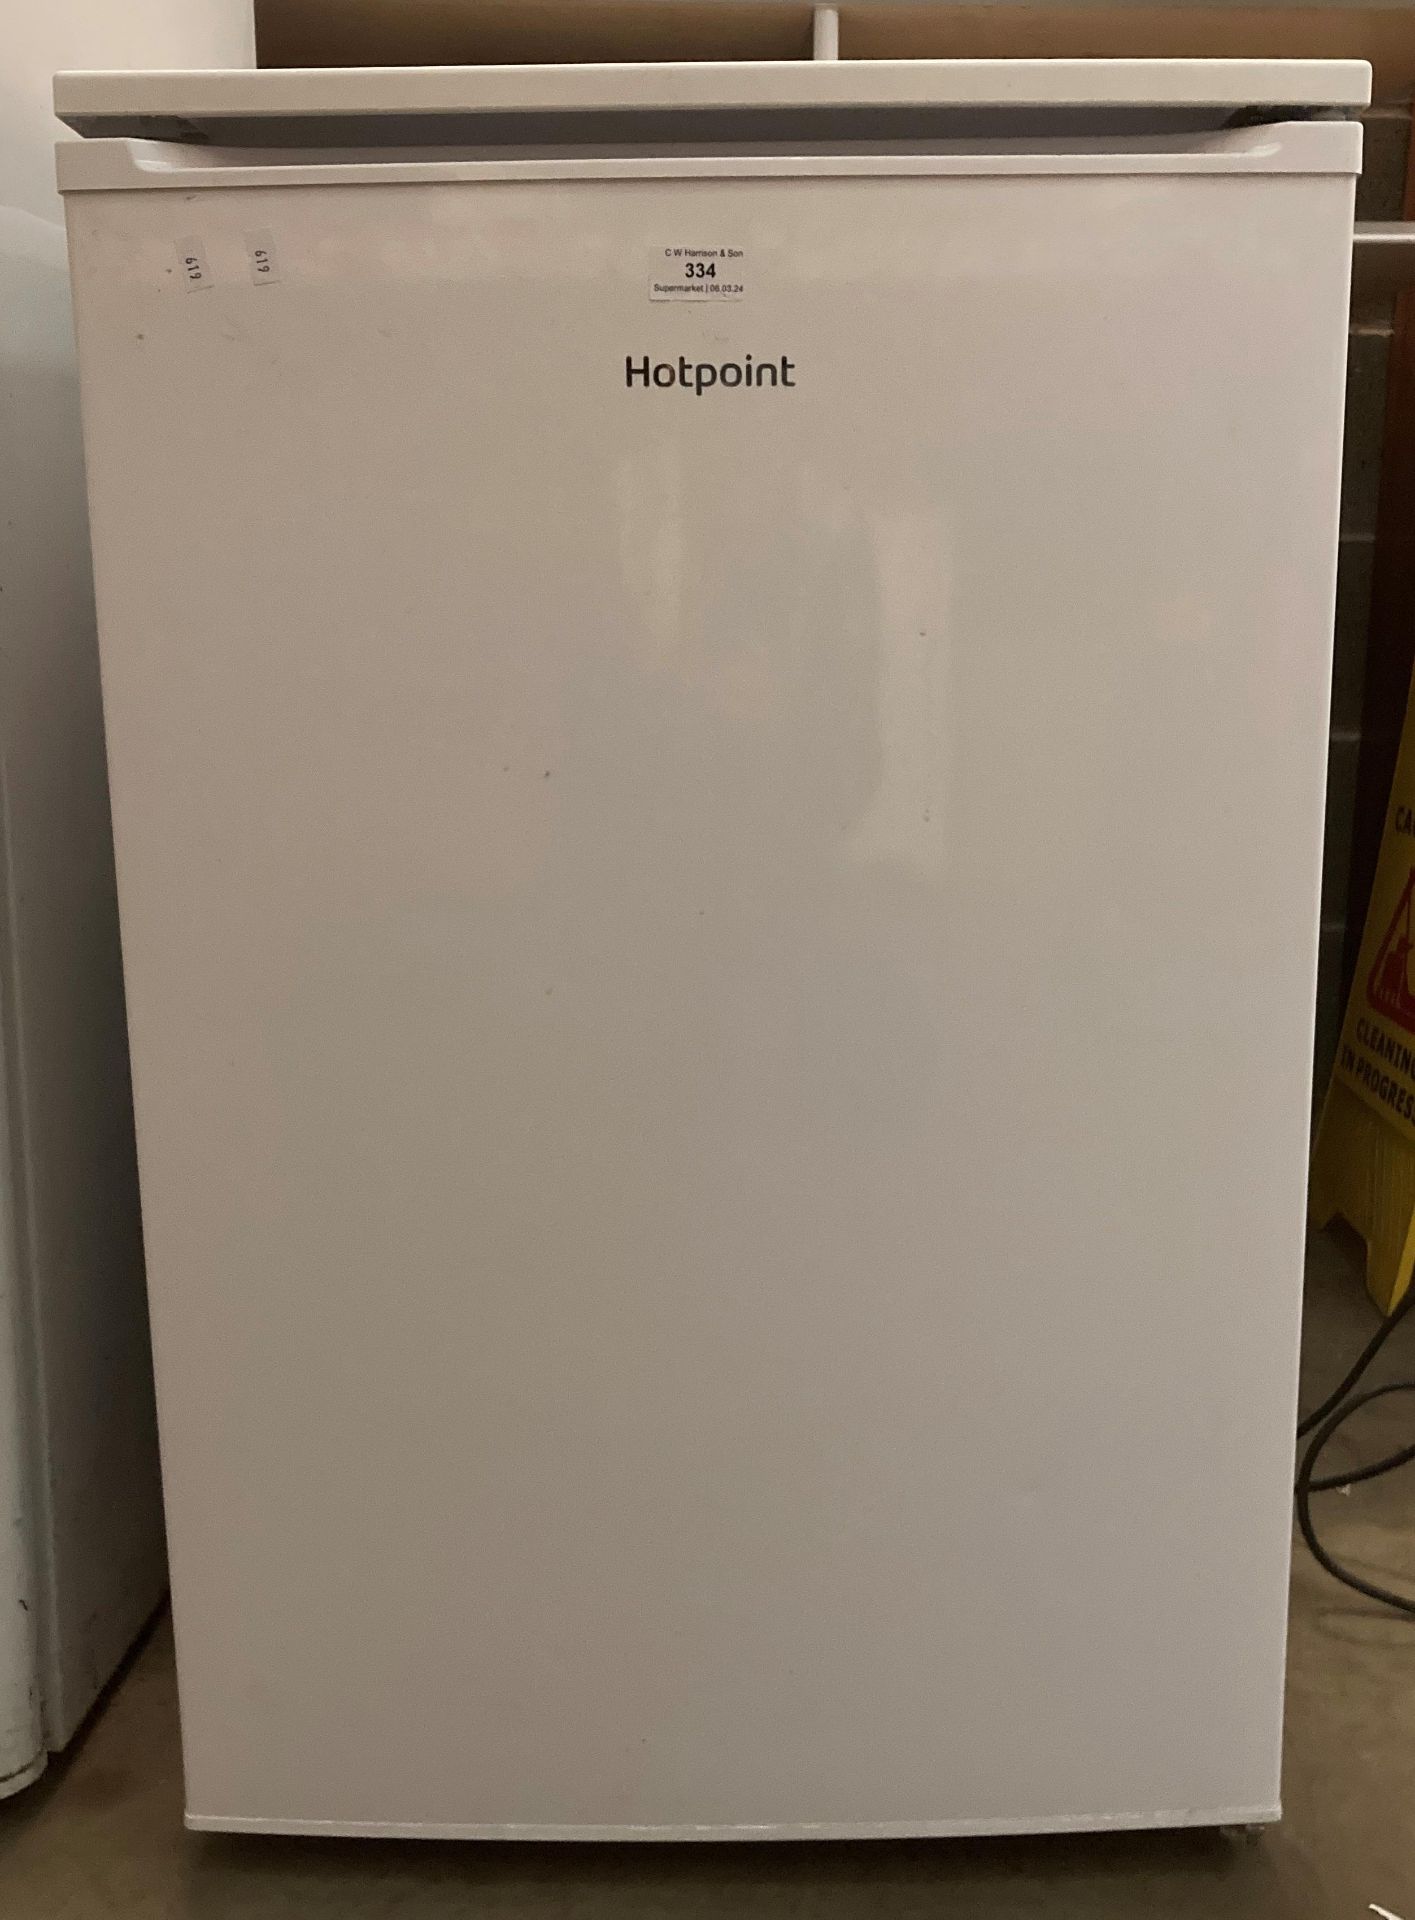 Hotpoint white under-counter fridge, - Image 2 of 2